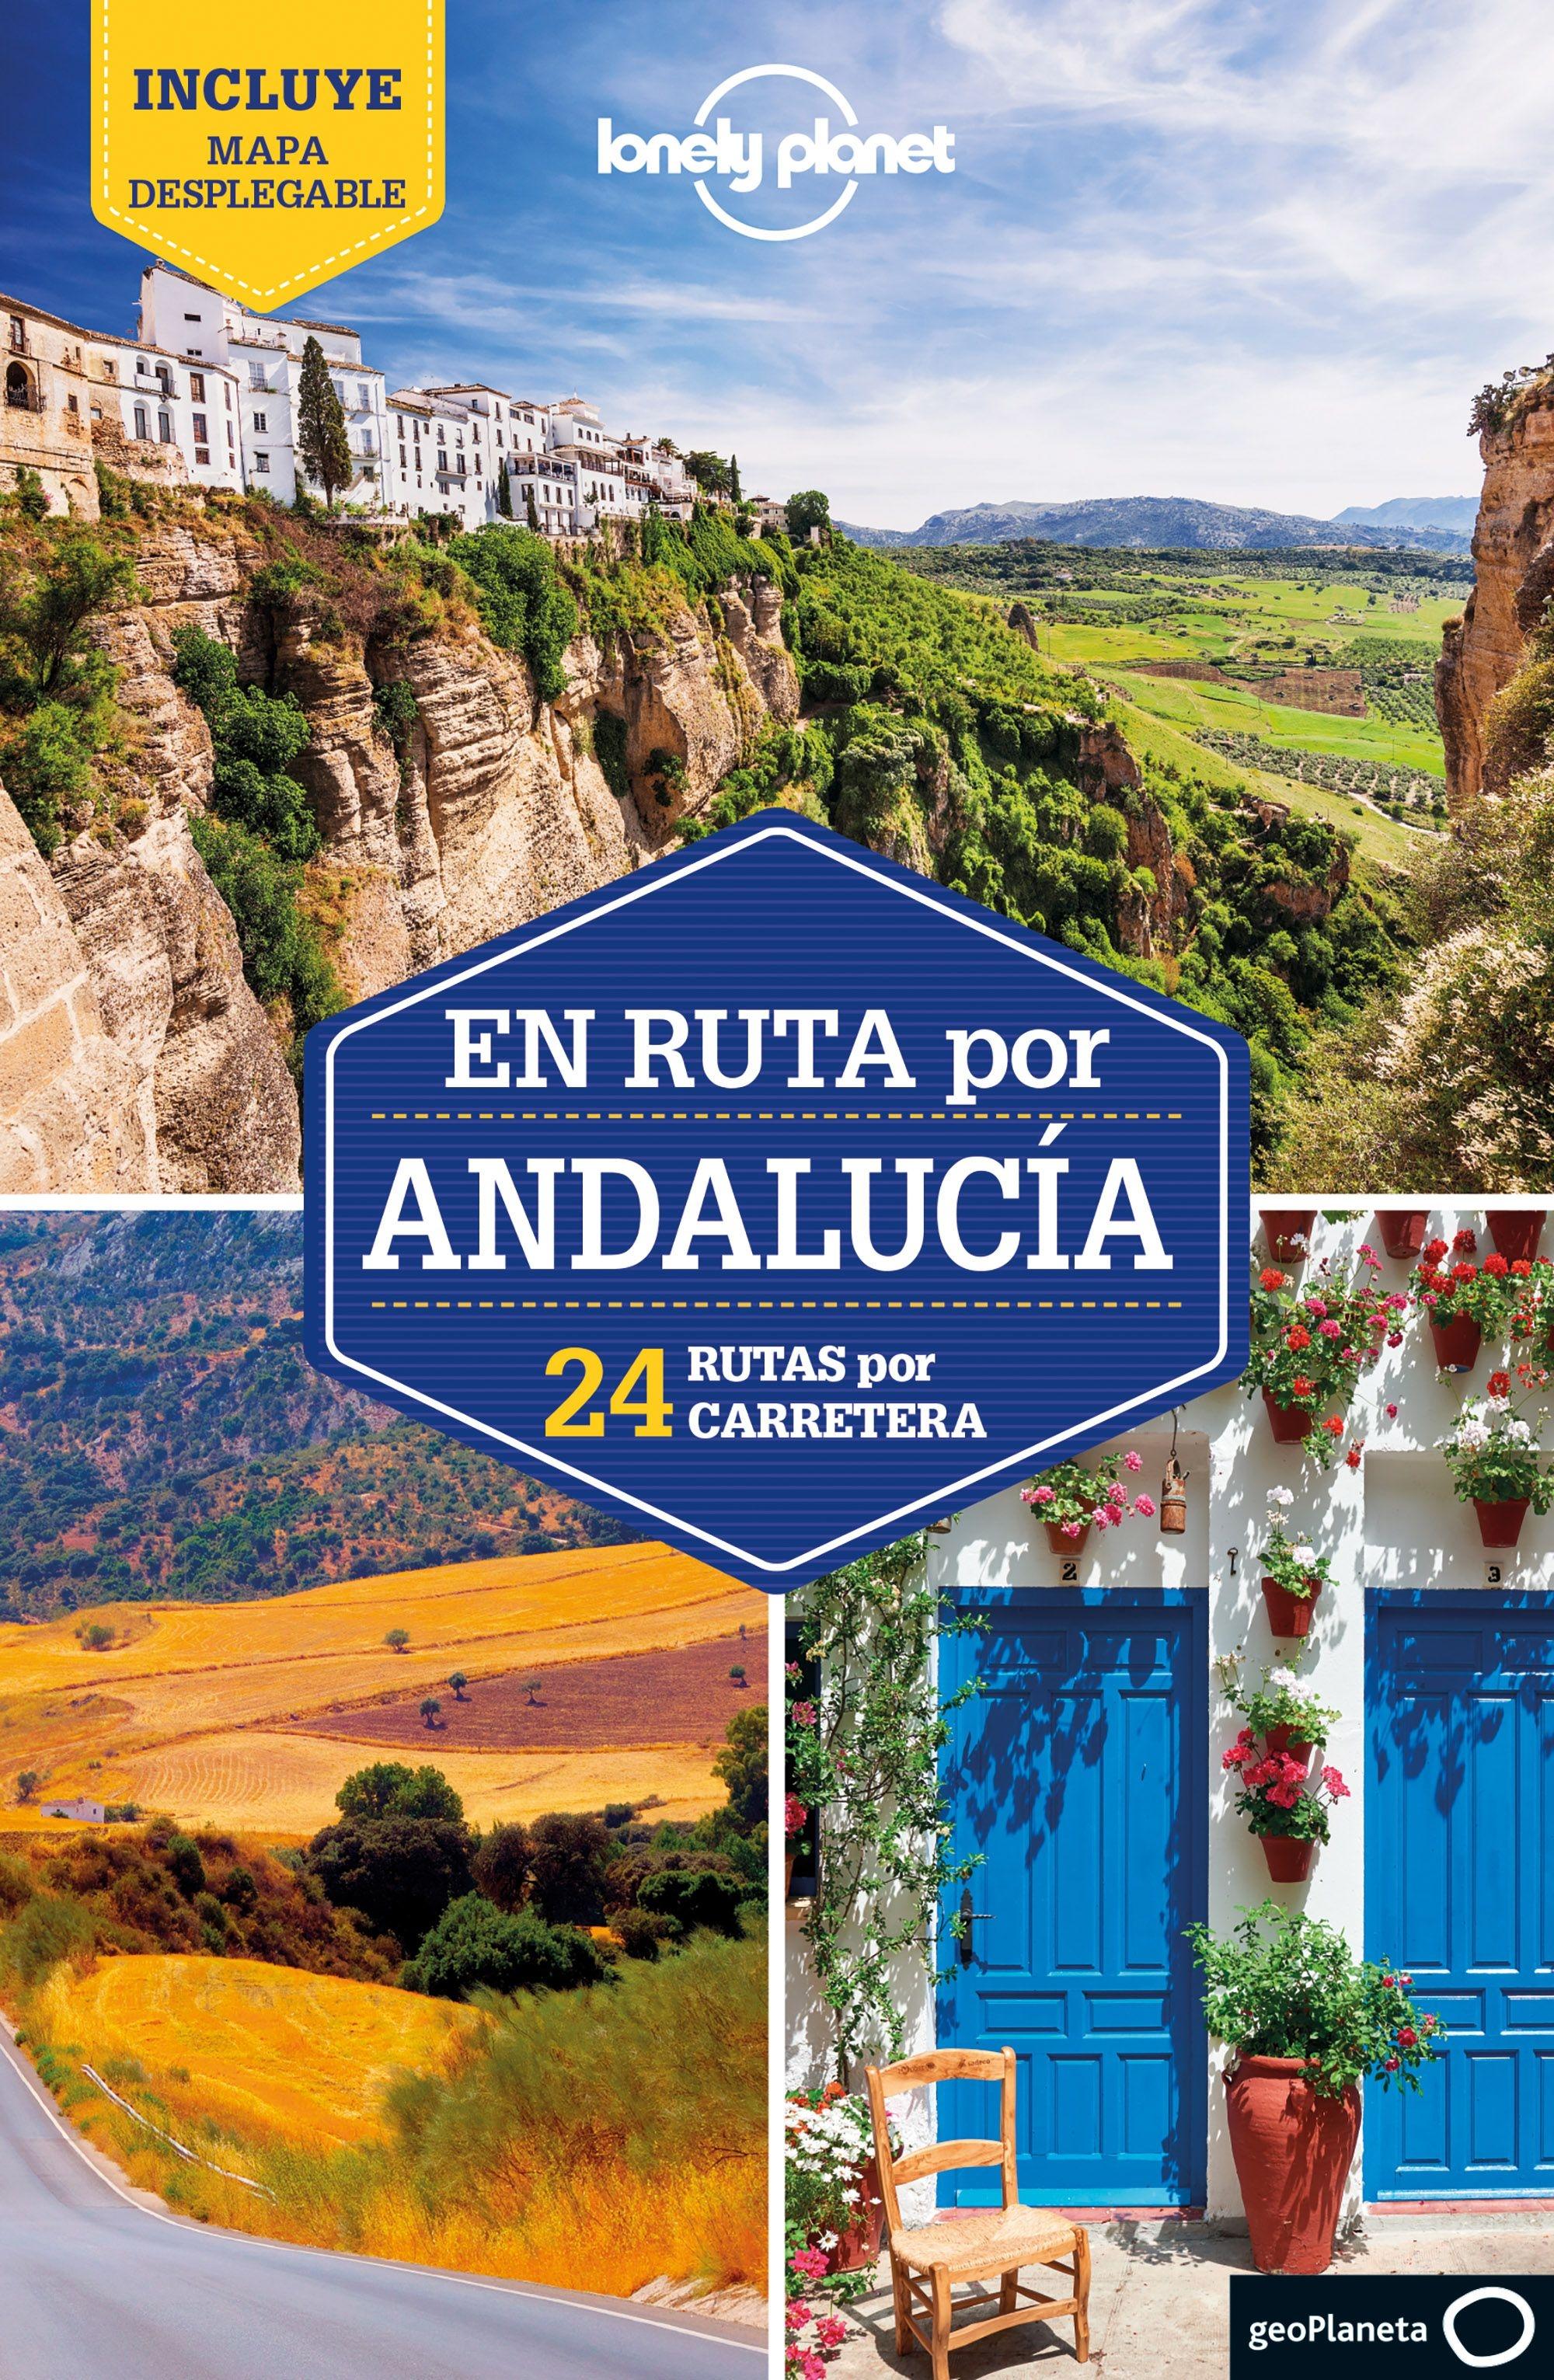 En ruta por Andalucía  "Lonely Planet. 24 rutas por carretera"